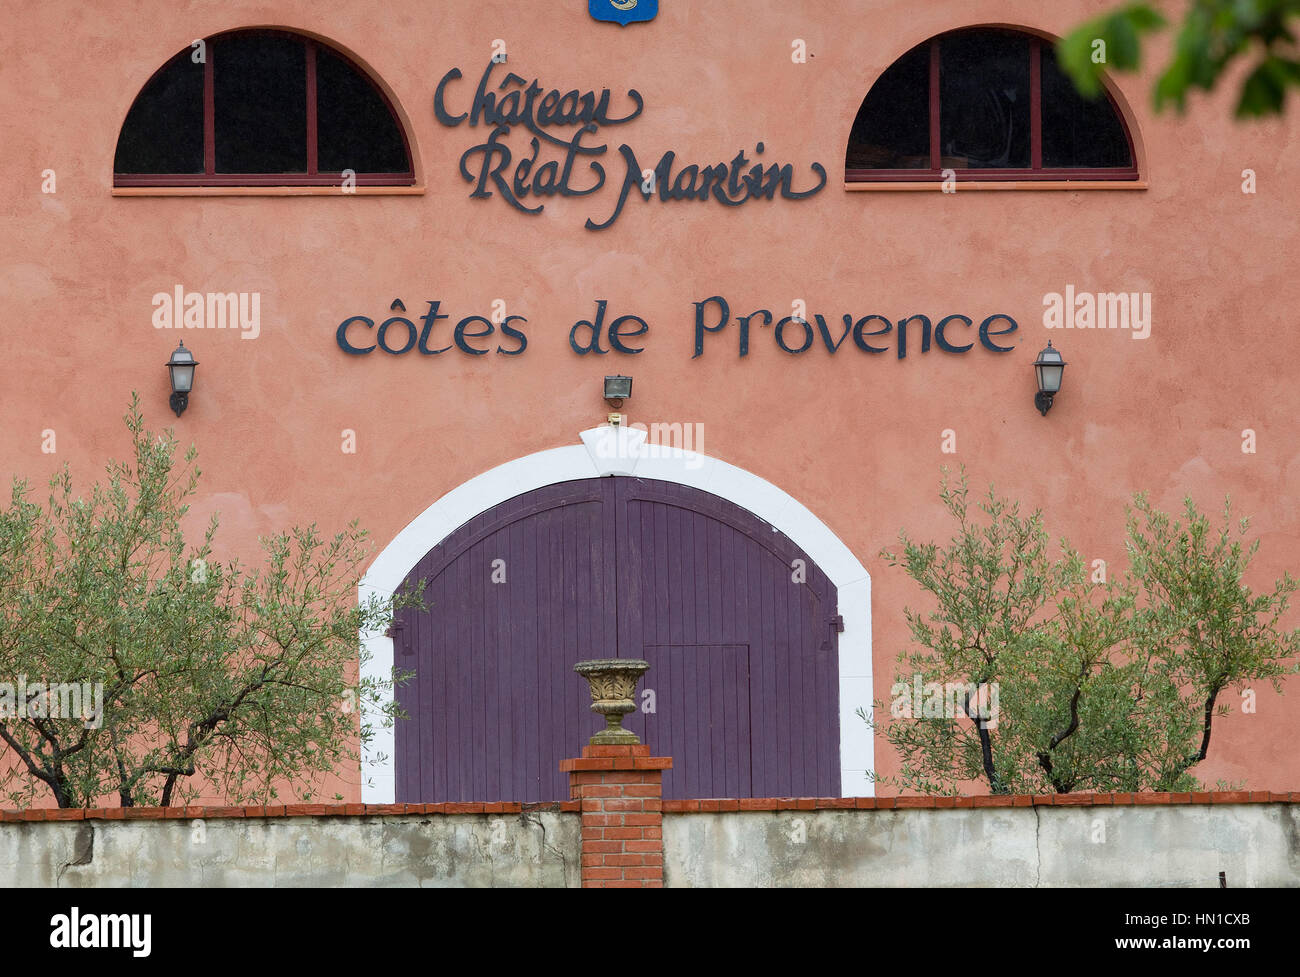 Die Chateu echte Martin in der Côtes de Provence, neben Chateau Miraval, der Ort für Brad Pitt und Angelina in Correns, Frankreich am 21. Mai 2012 Hochzeit. Foto von Francis Specker Stockfoto